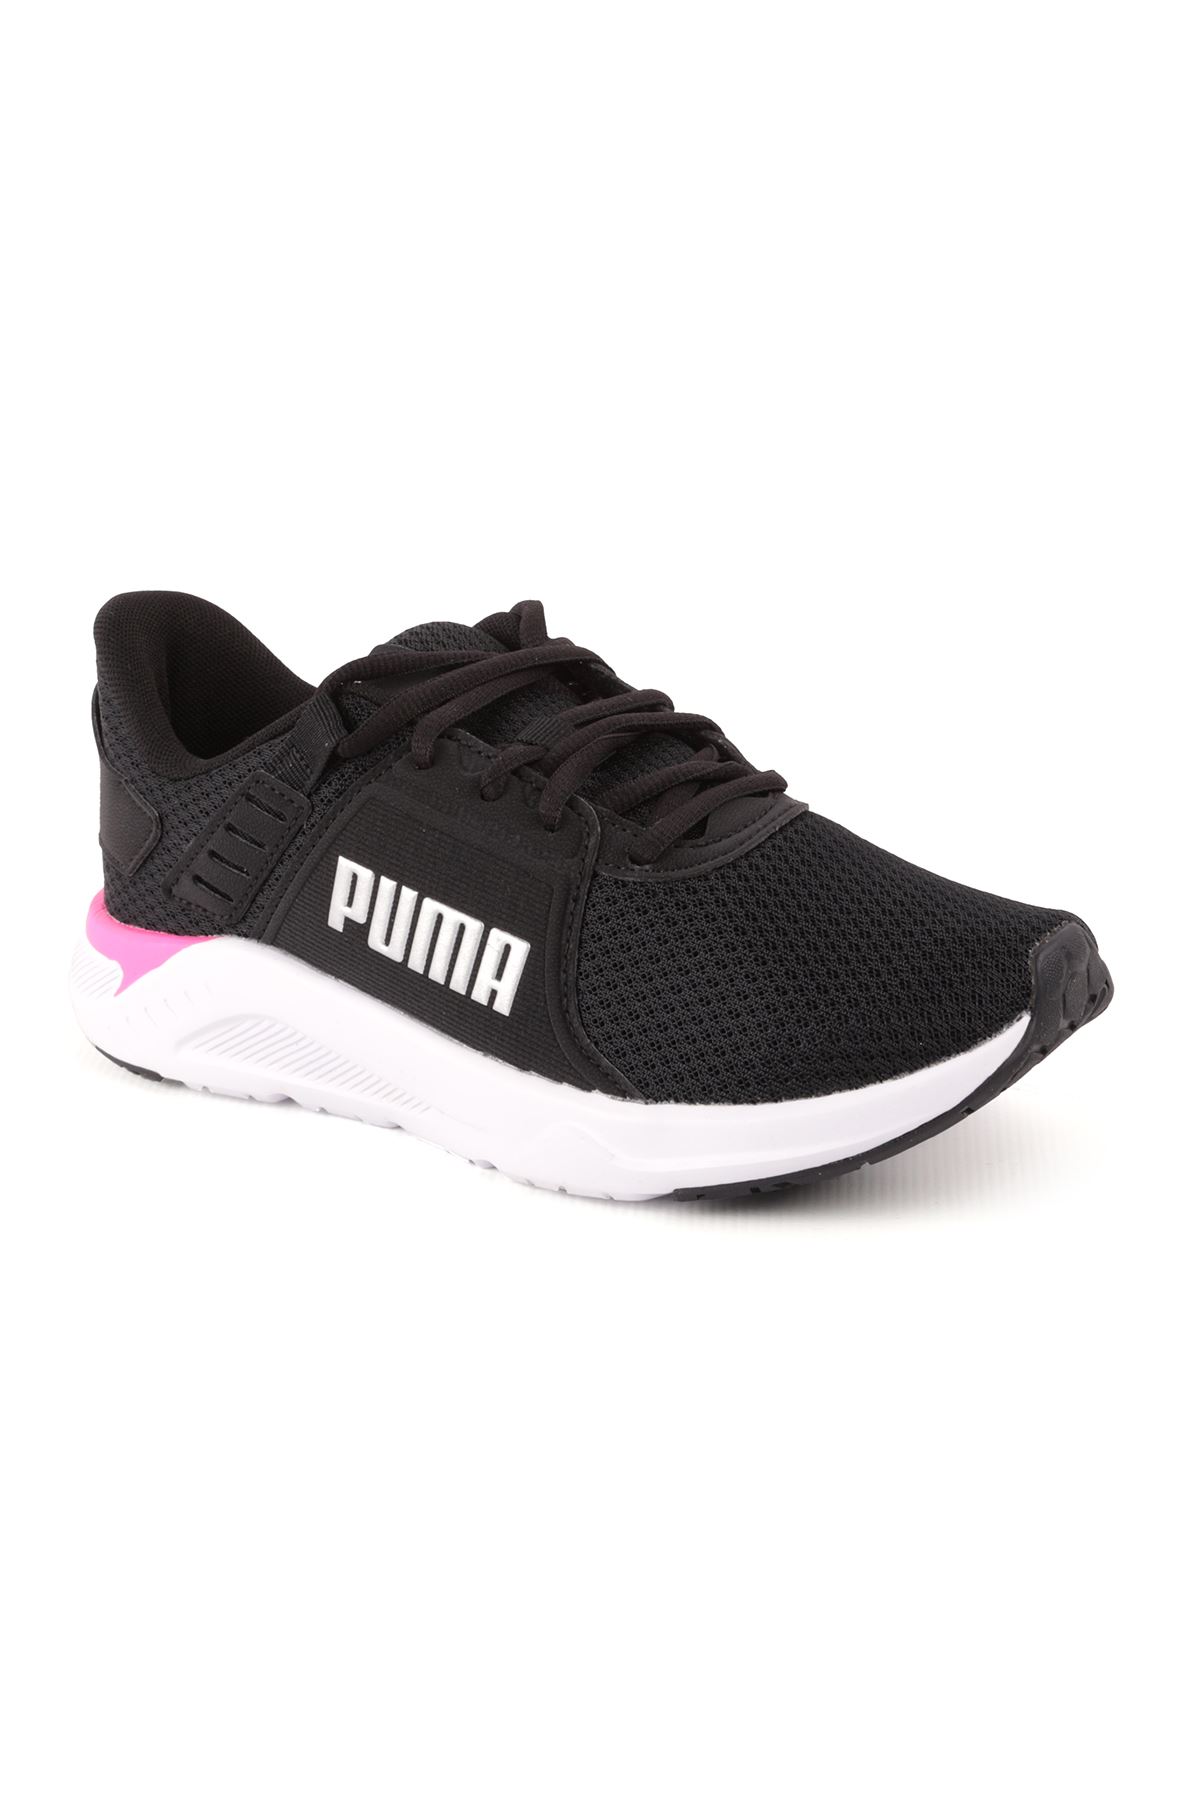 Puma Ftr Connect Siyah Kadın Spor Ayakkabı 